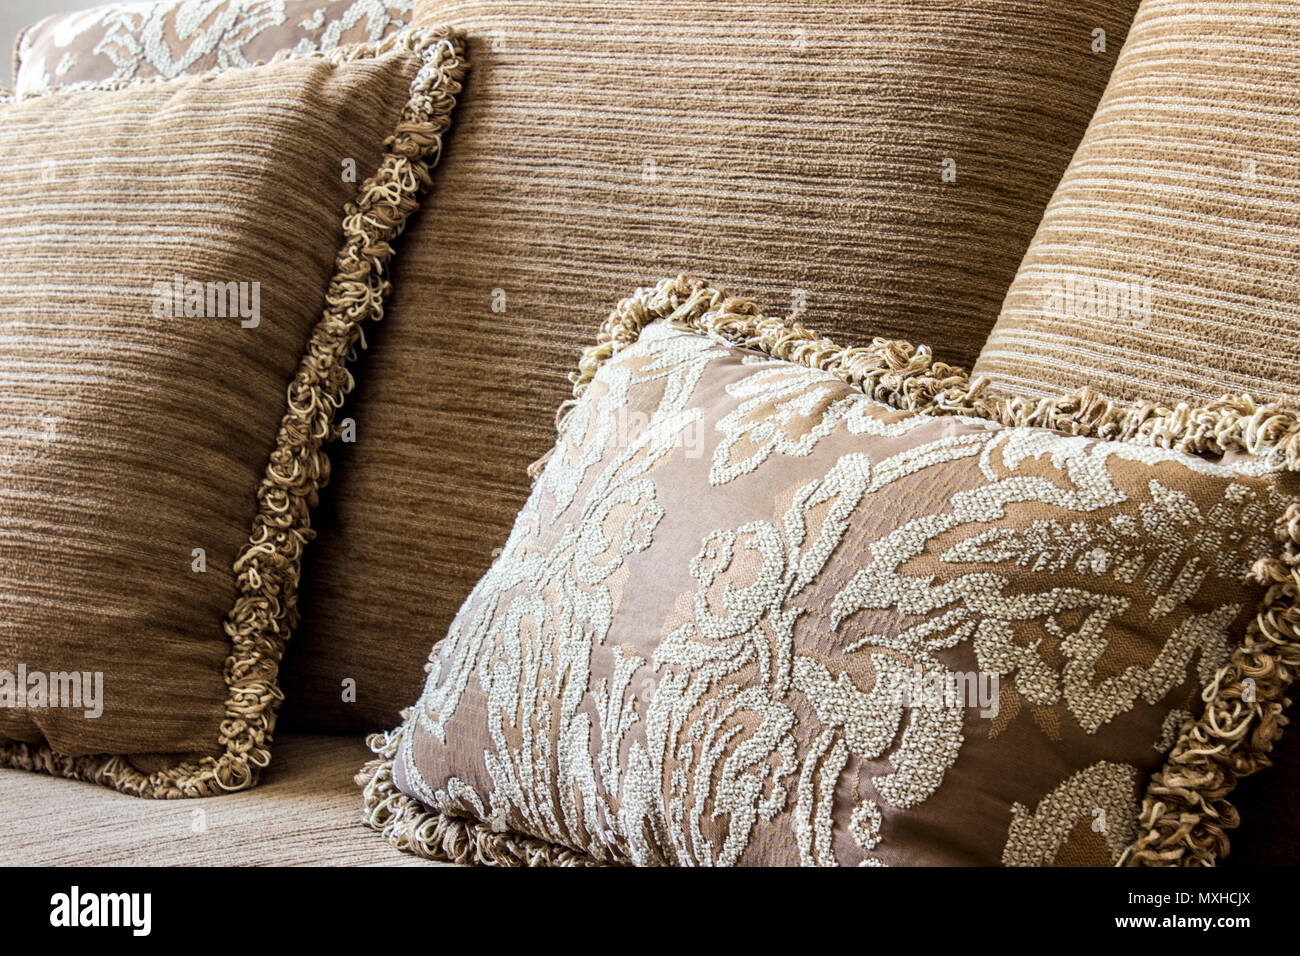 Eine elegante braune bestickte Kissen rund um normale Kissen mit Garn  Bordüren, die alle über eine Couch Stockfotografie - Alamy